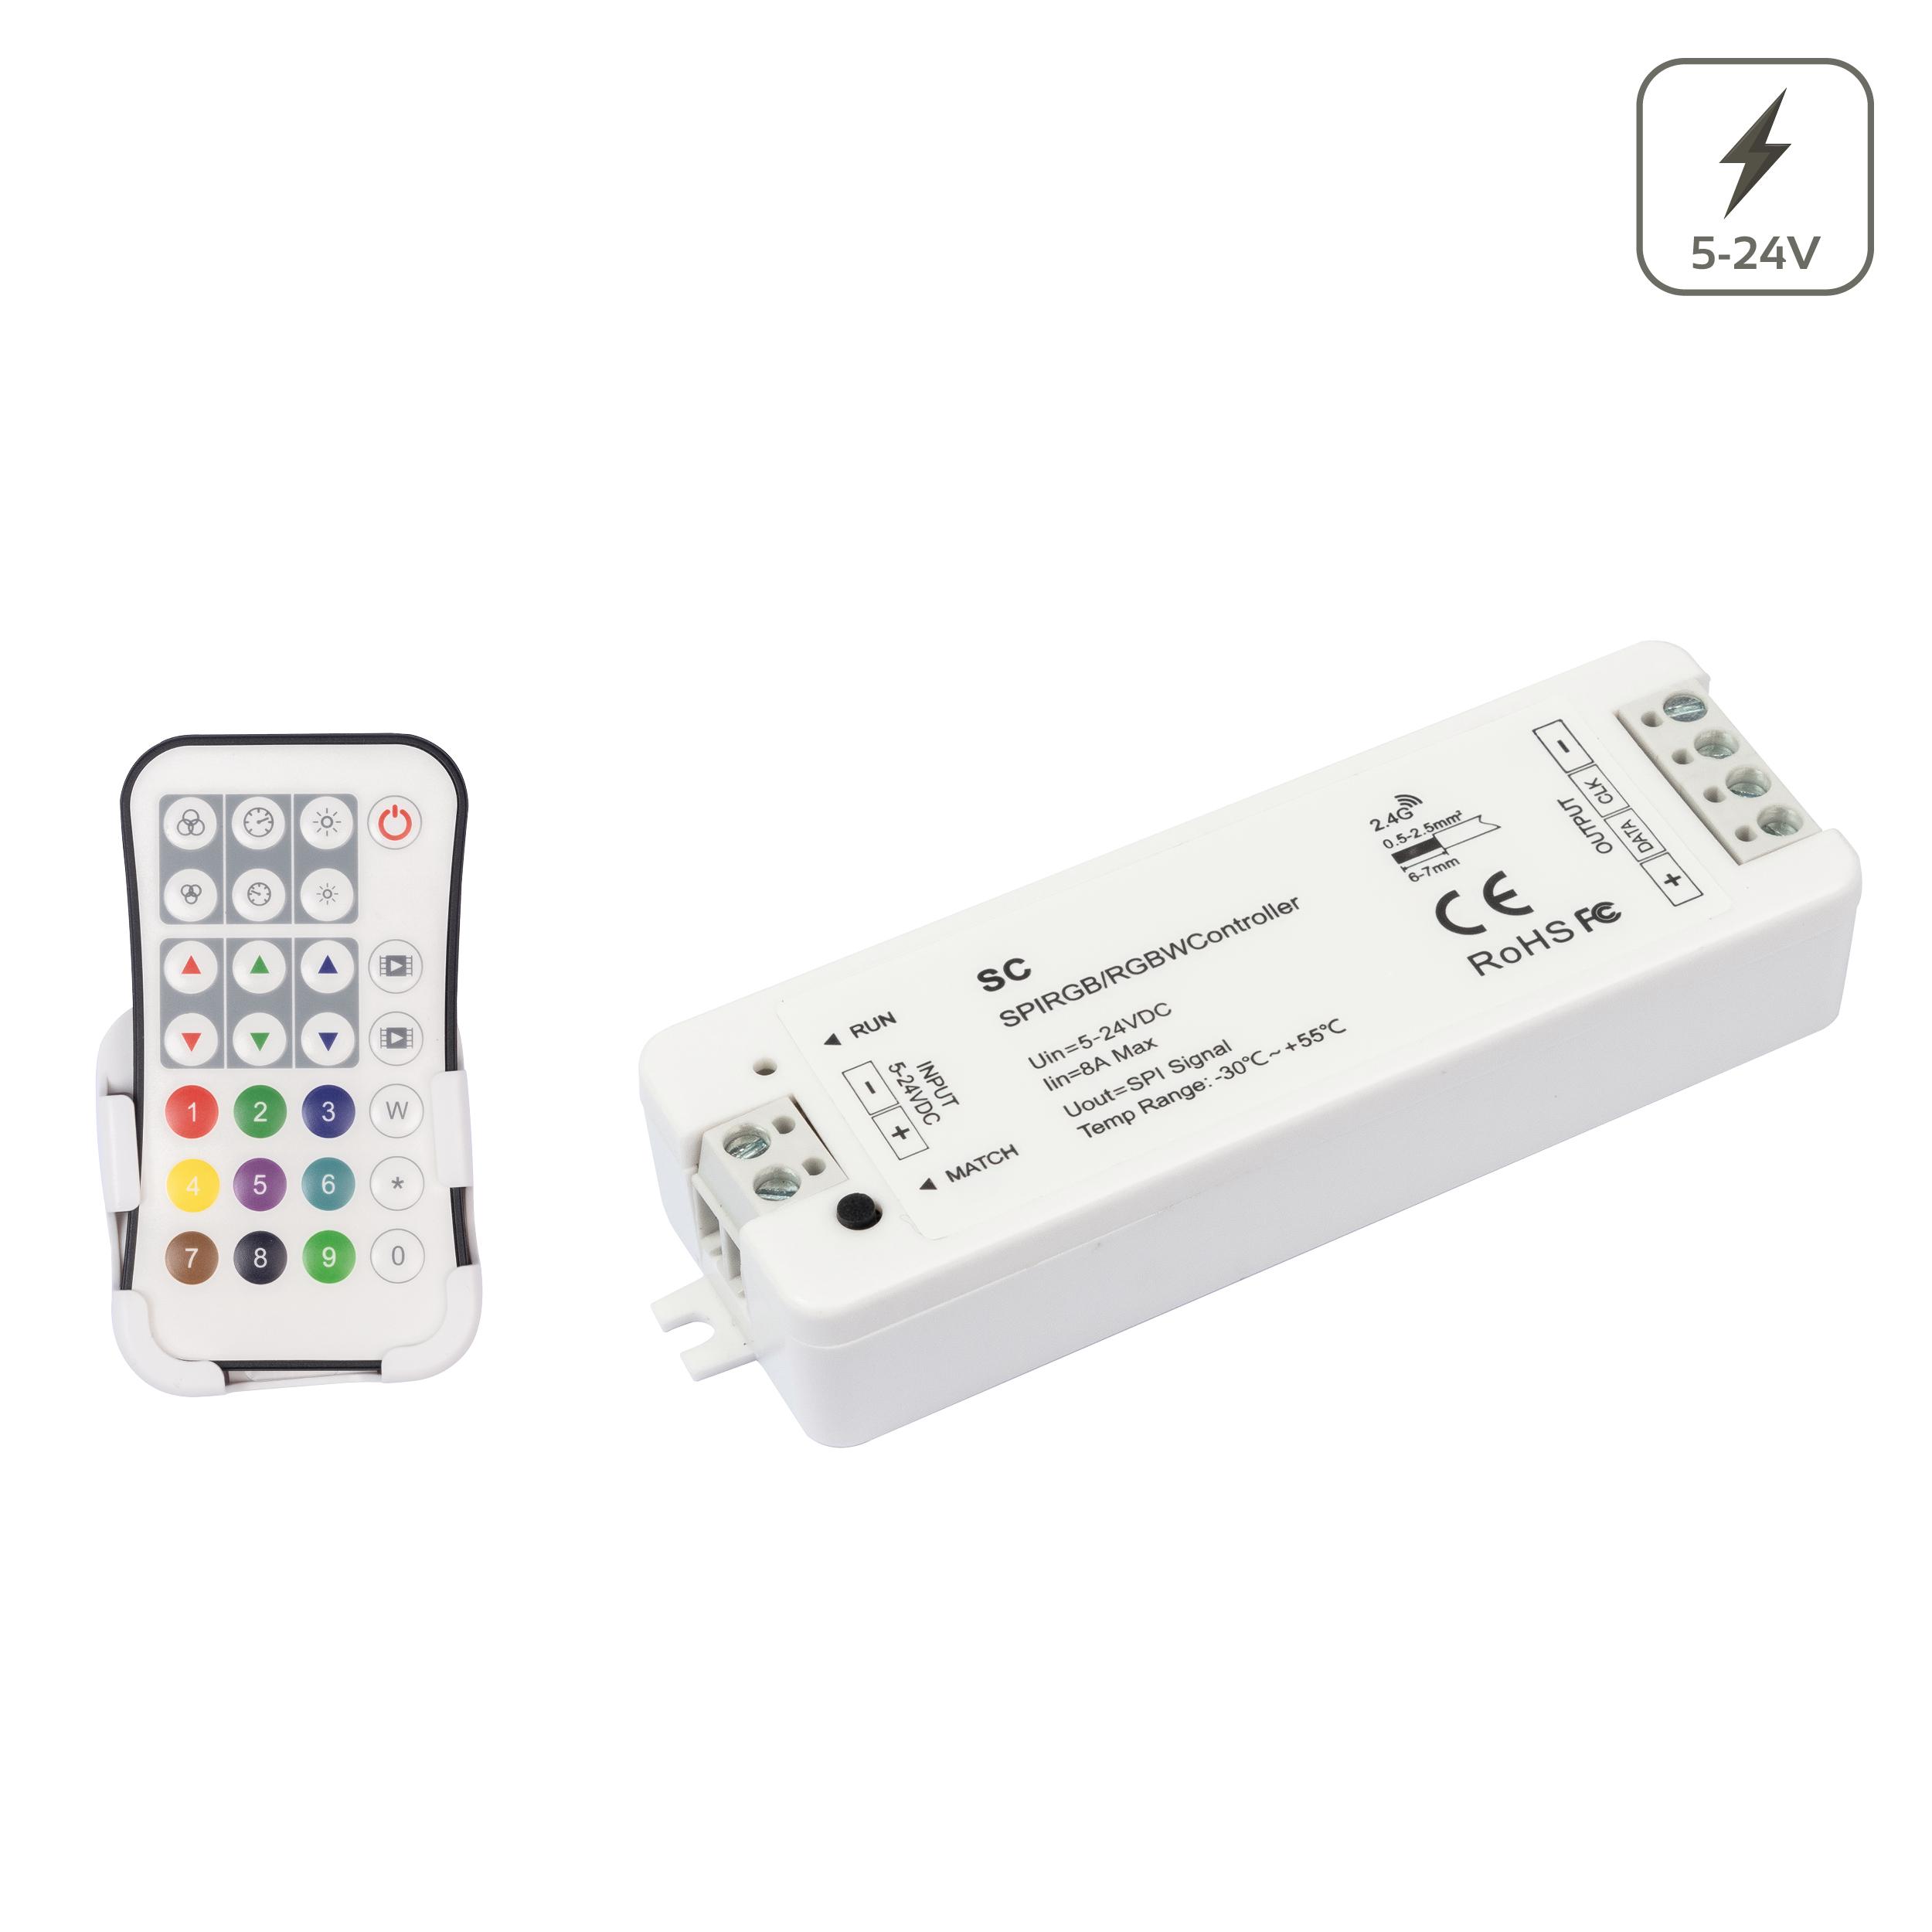 Pixel LED Controller DC5V-24V 2,4G 27 Tasten Fernbedienung für WS2811 WS2812B RGB LED